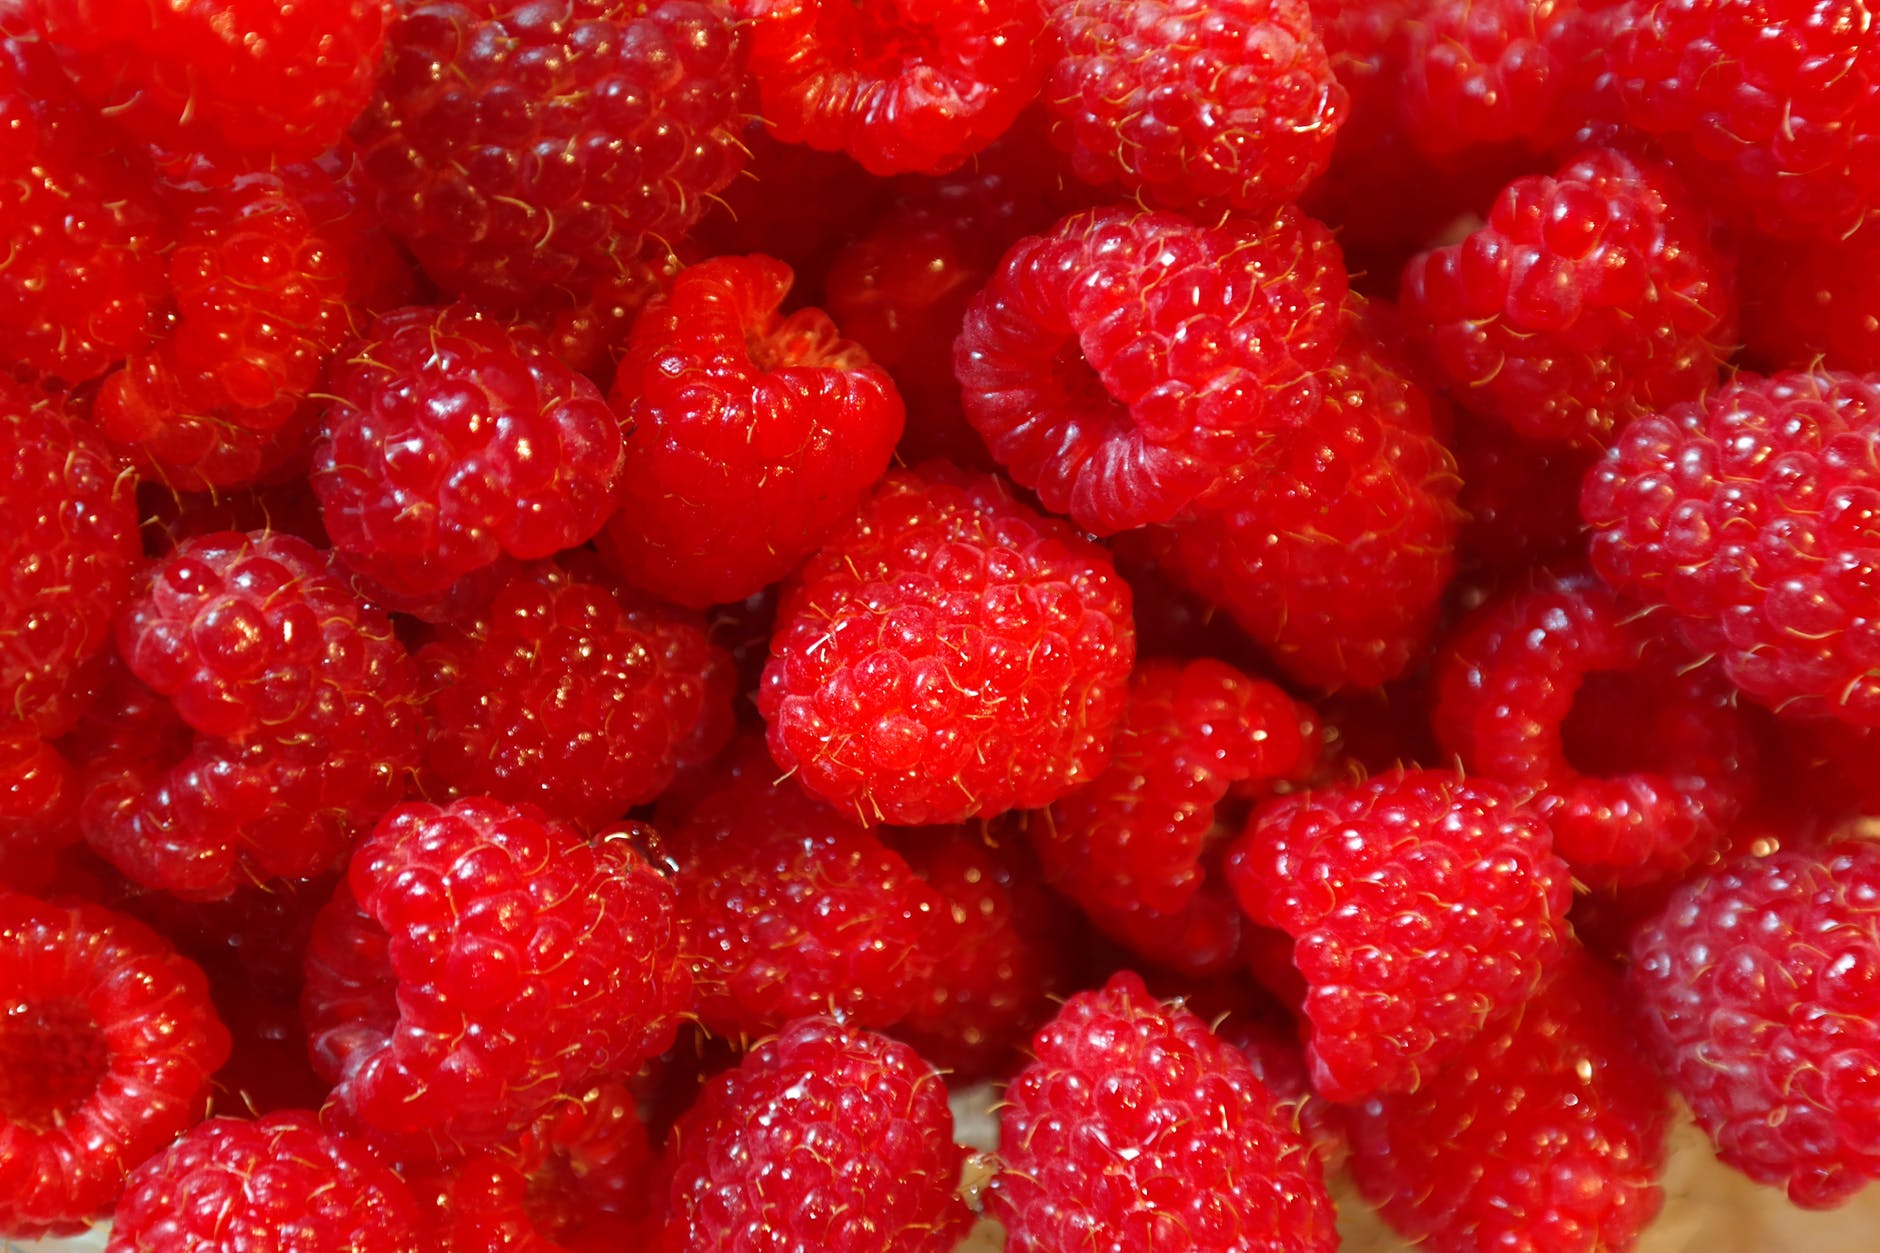 healthy red fruits raspberries